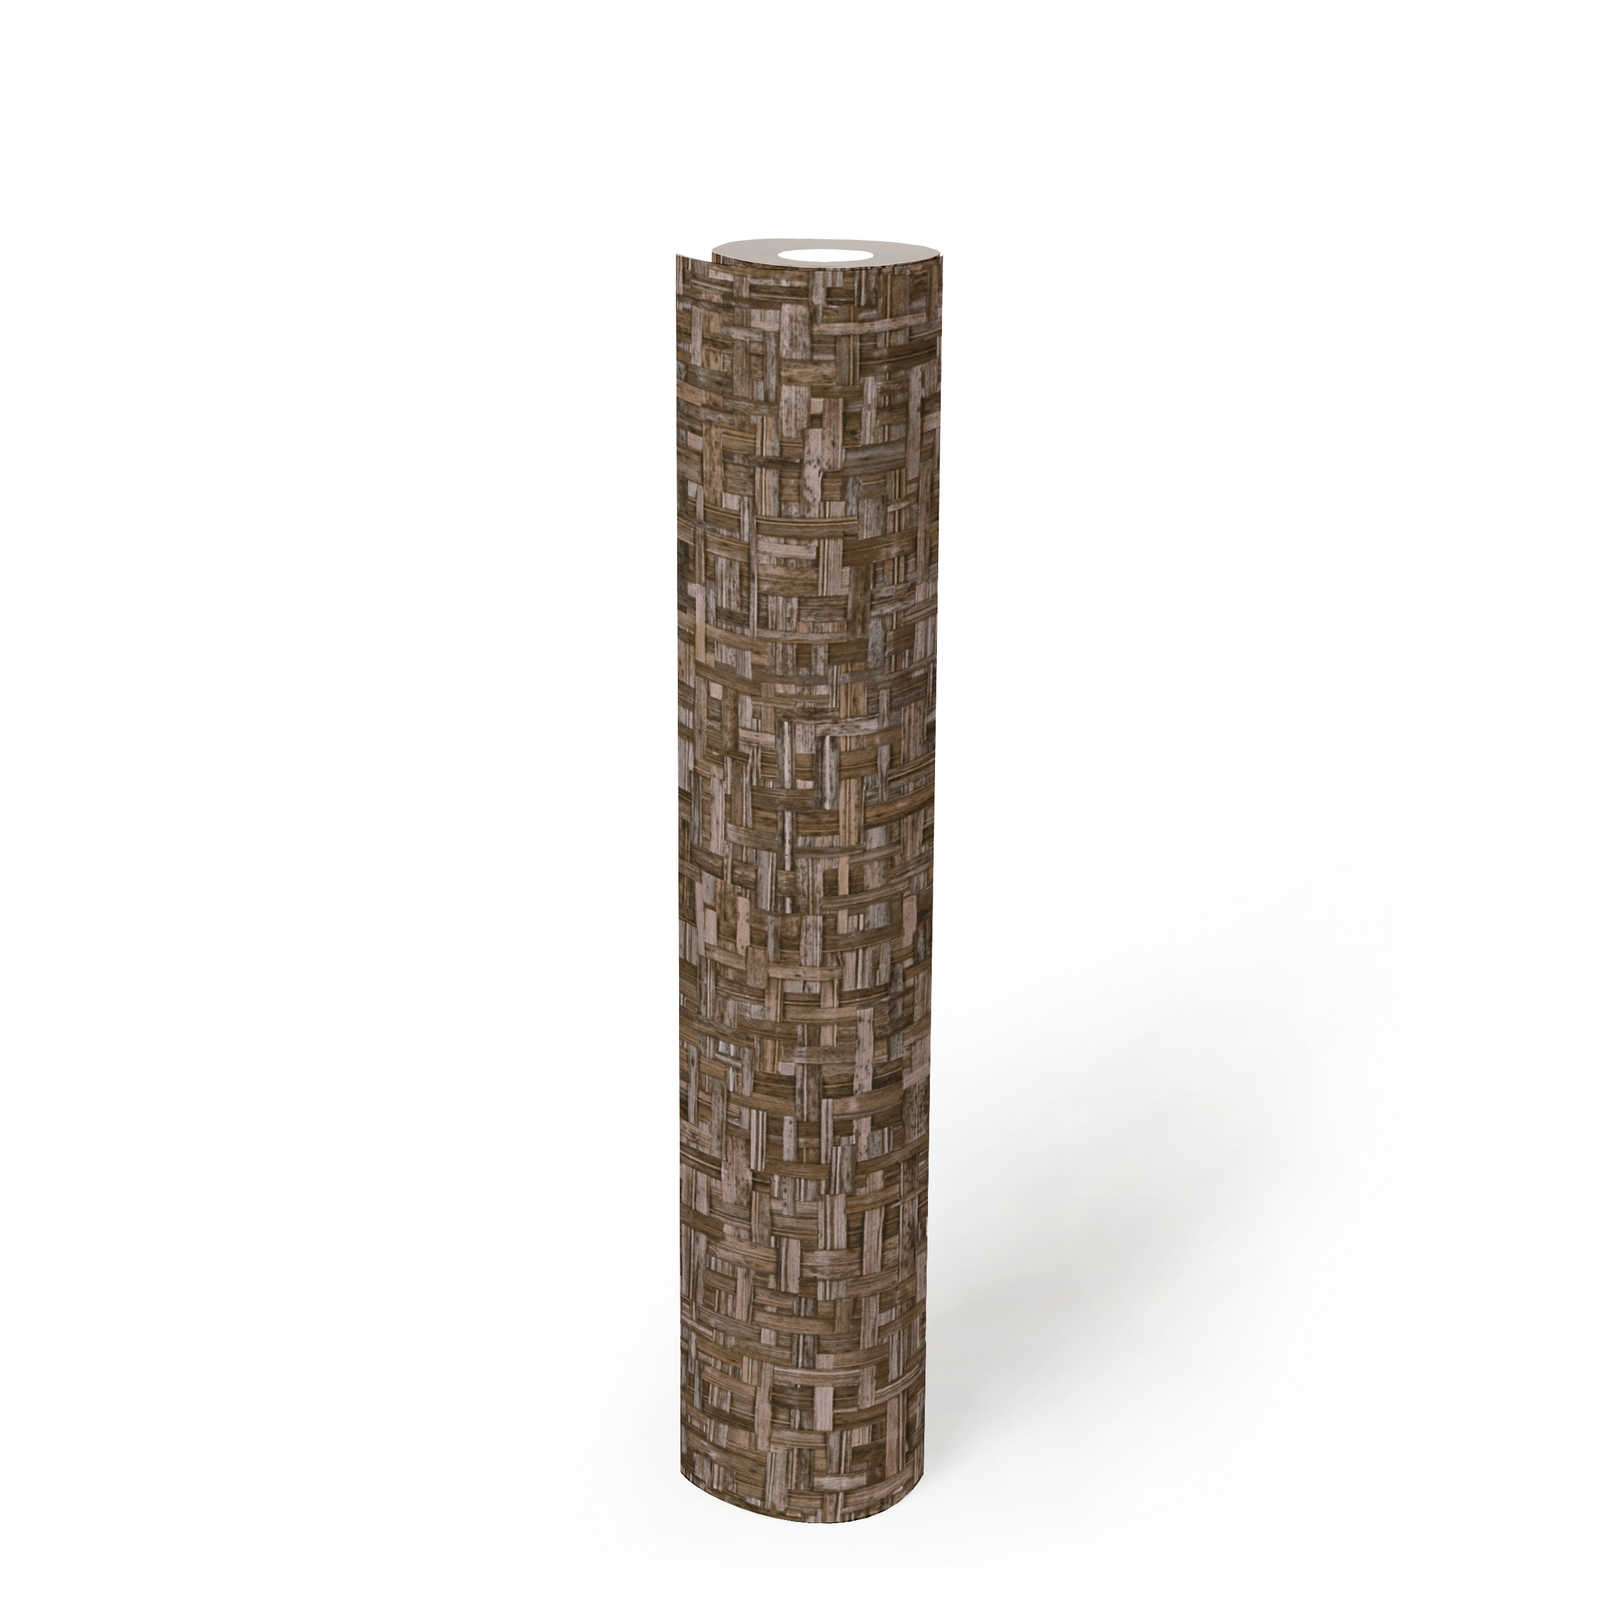             Holzoptik Tapete Braun mit Miro-Mosaik Muster – Braun
        